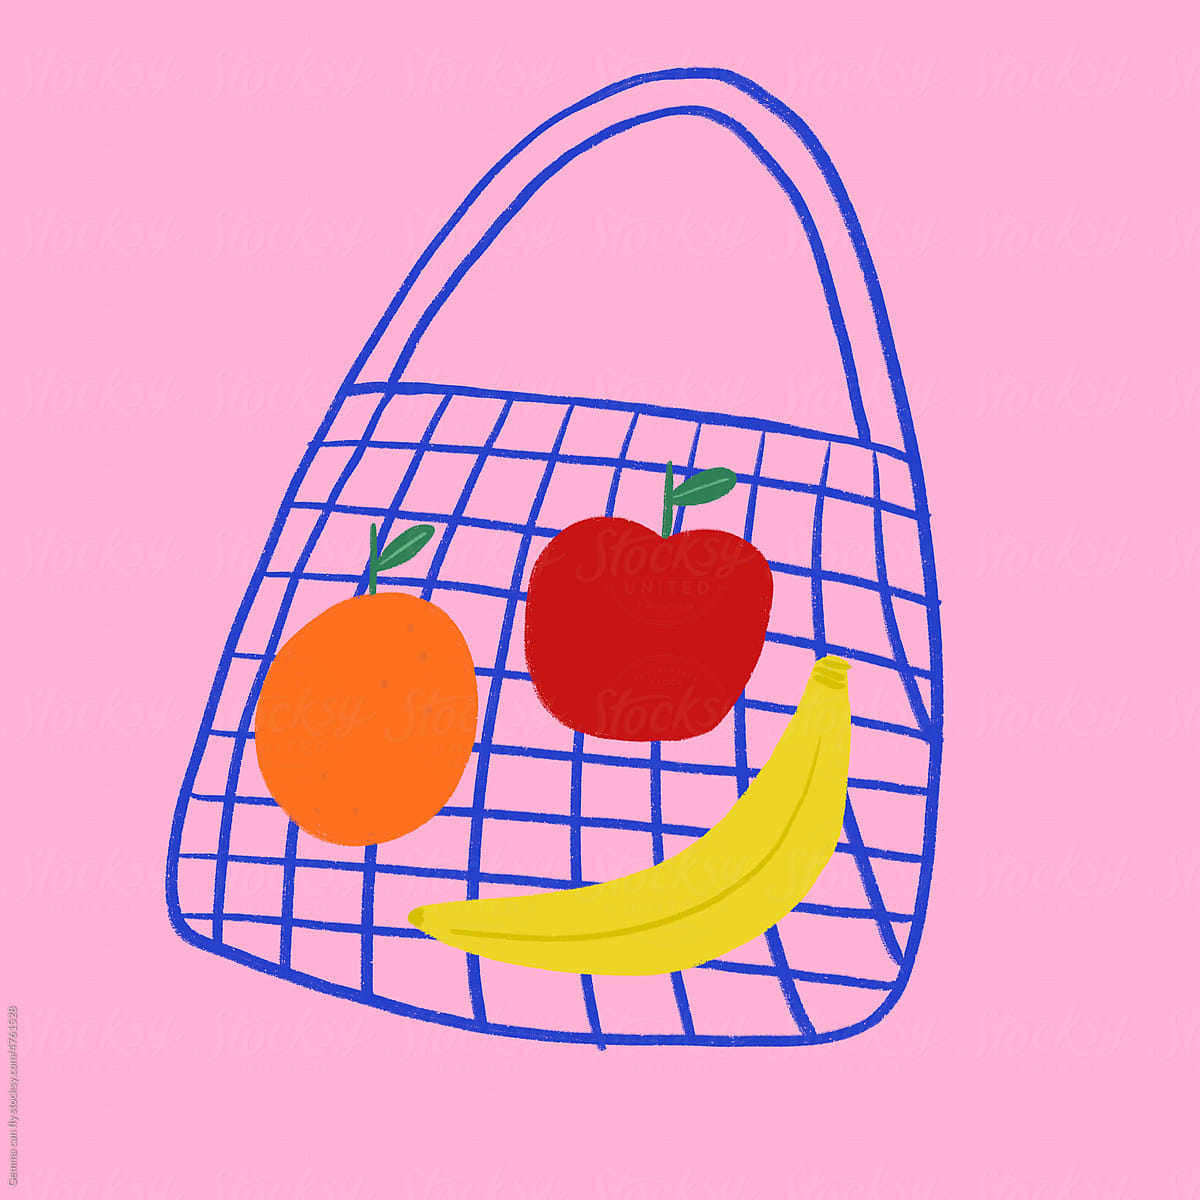 Fruit in a net shopping bag